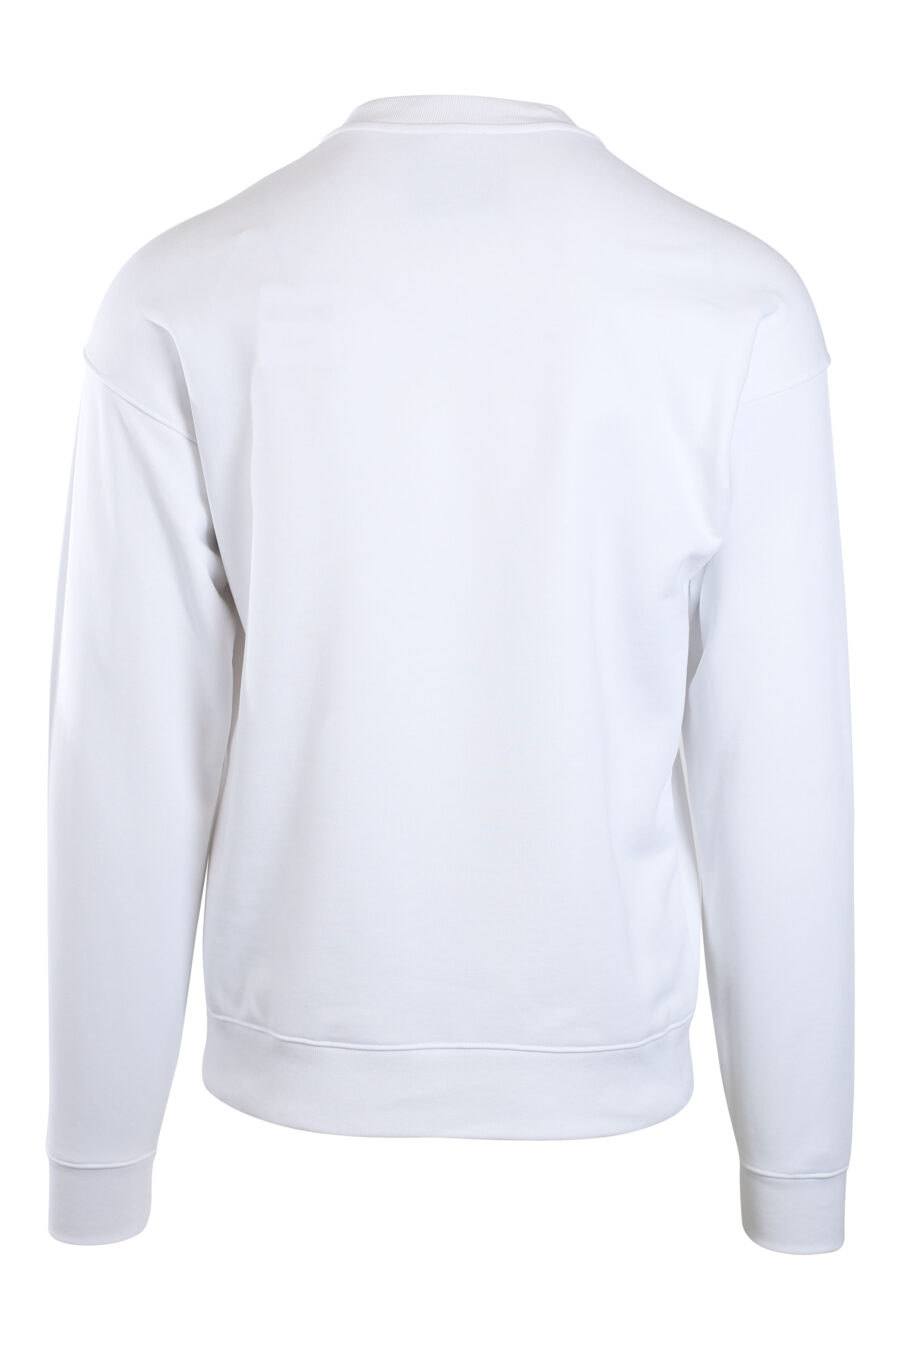 Weißes Sweatshirt mit Maxilogo "Dies ist kein Moschino-Spielzeug" - IMG 2149